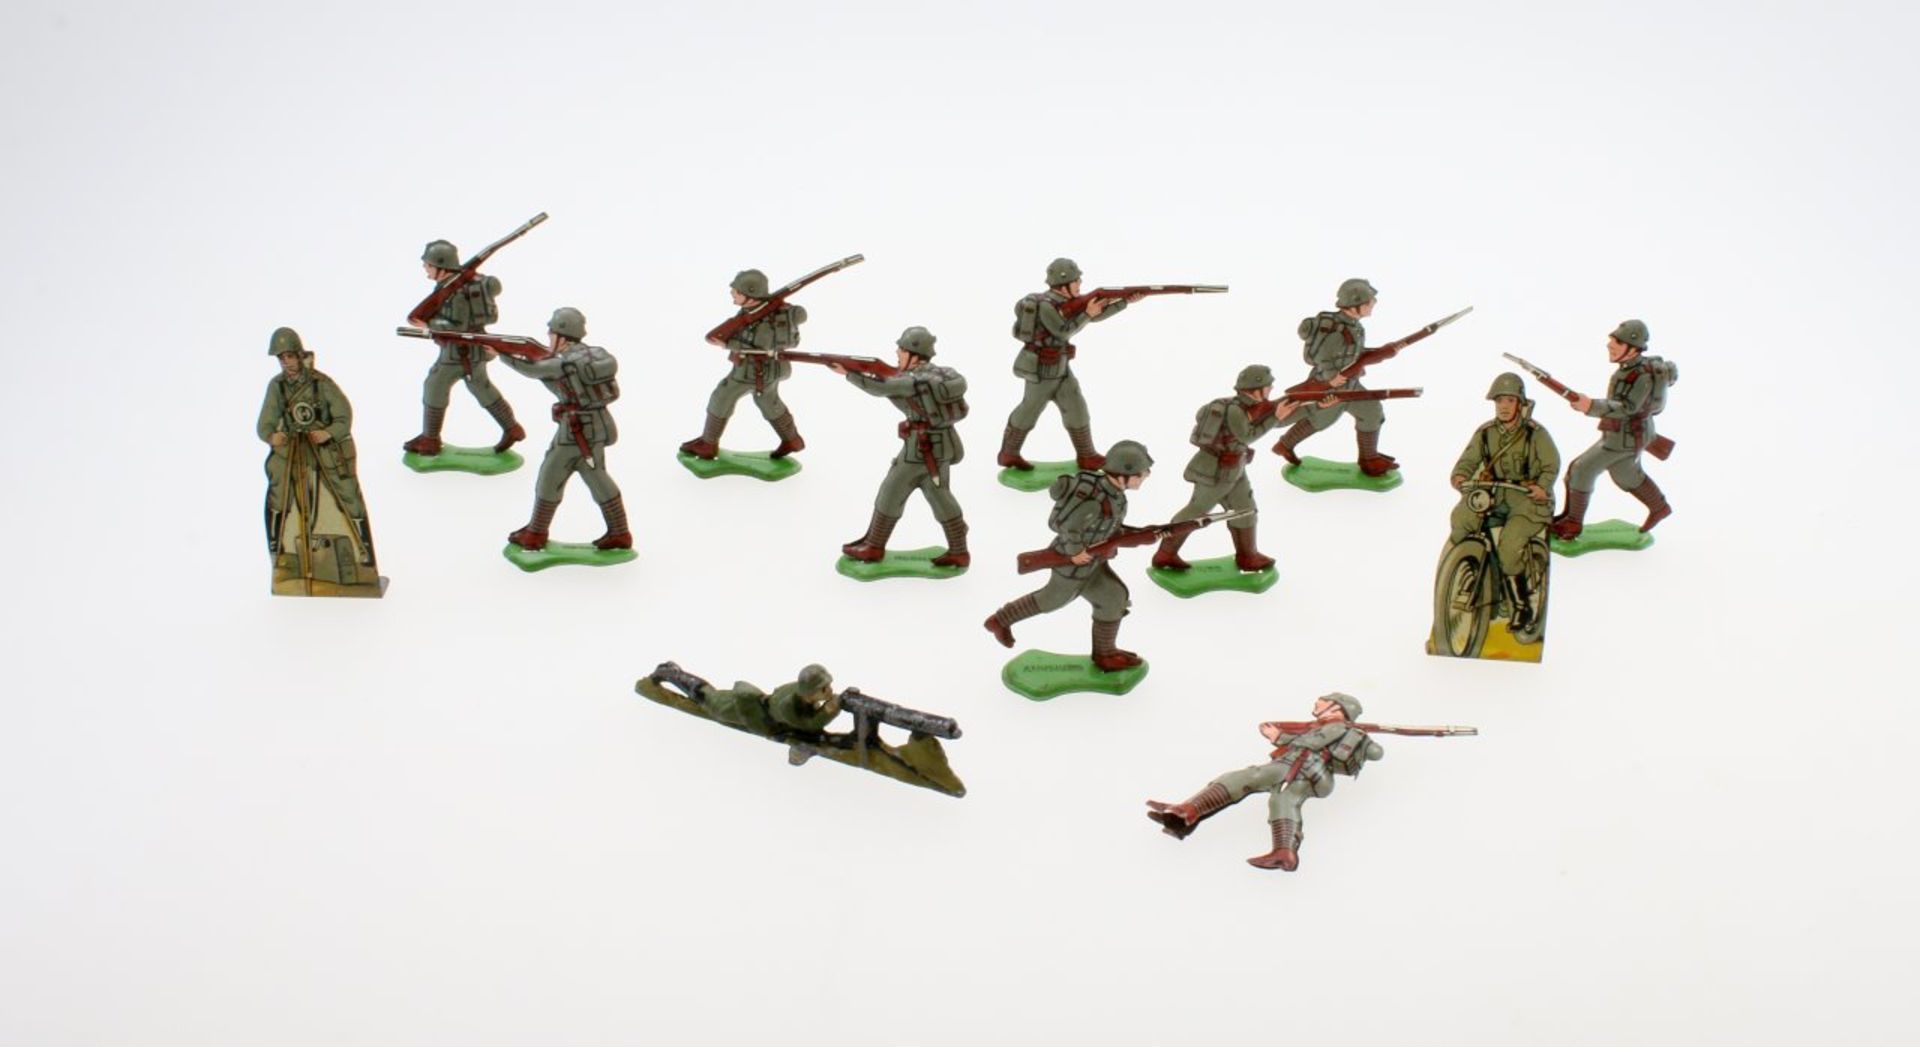 Pennytoy Blechsoldaten u.a. - Spielzeug vor 1945 13 Teile. 10 stürmende, feuernde oder marschierende